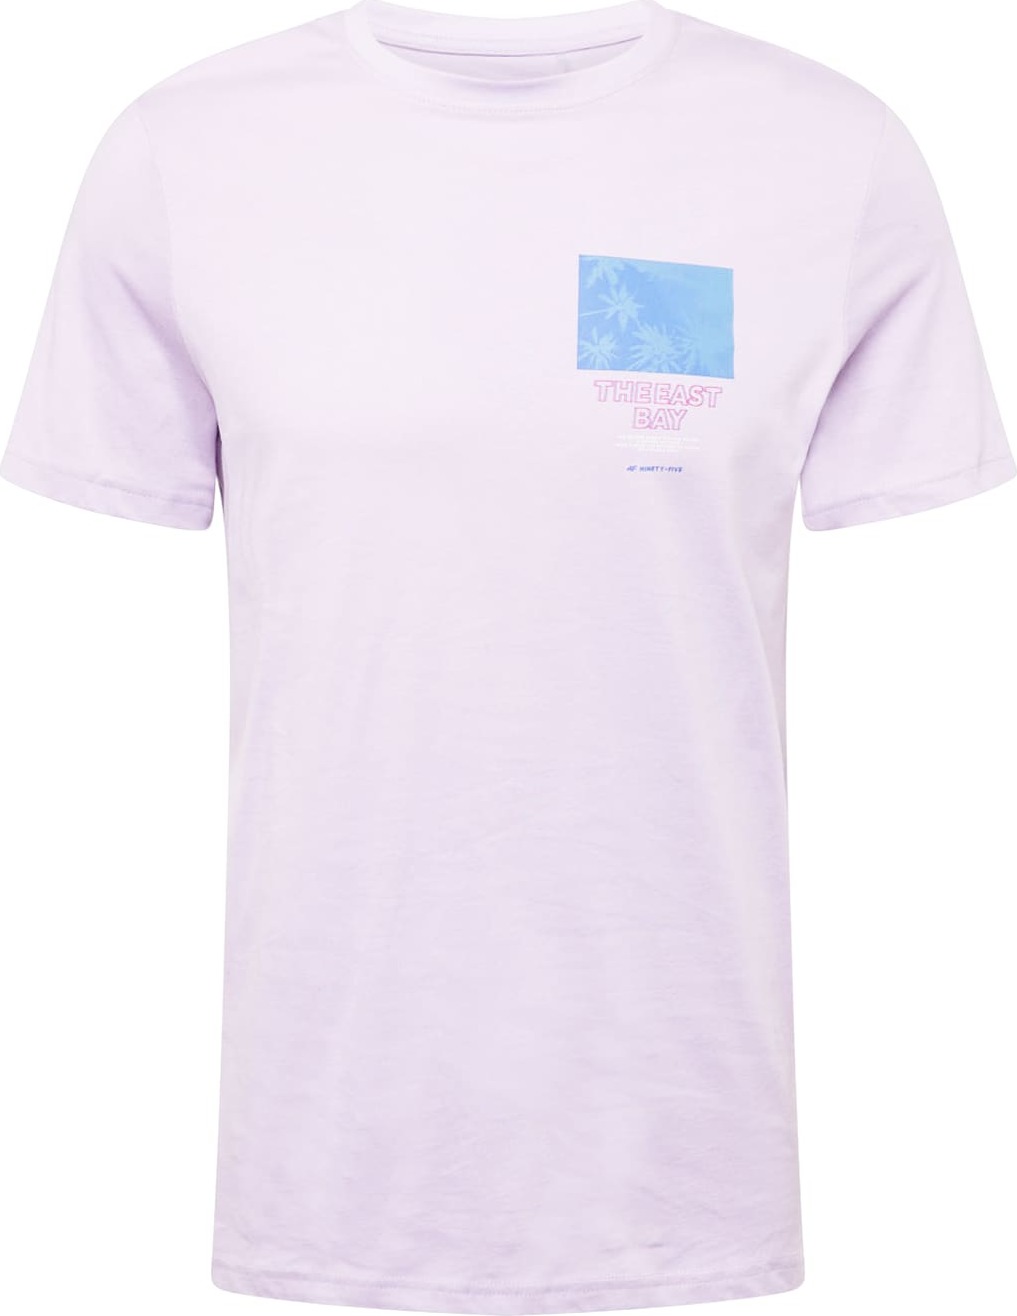 4F Funkční tričko světlemodrá / pastelová fialová / pink